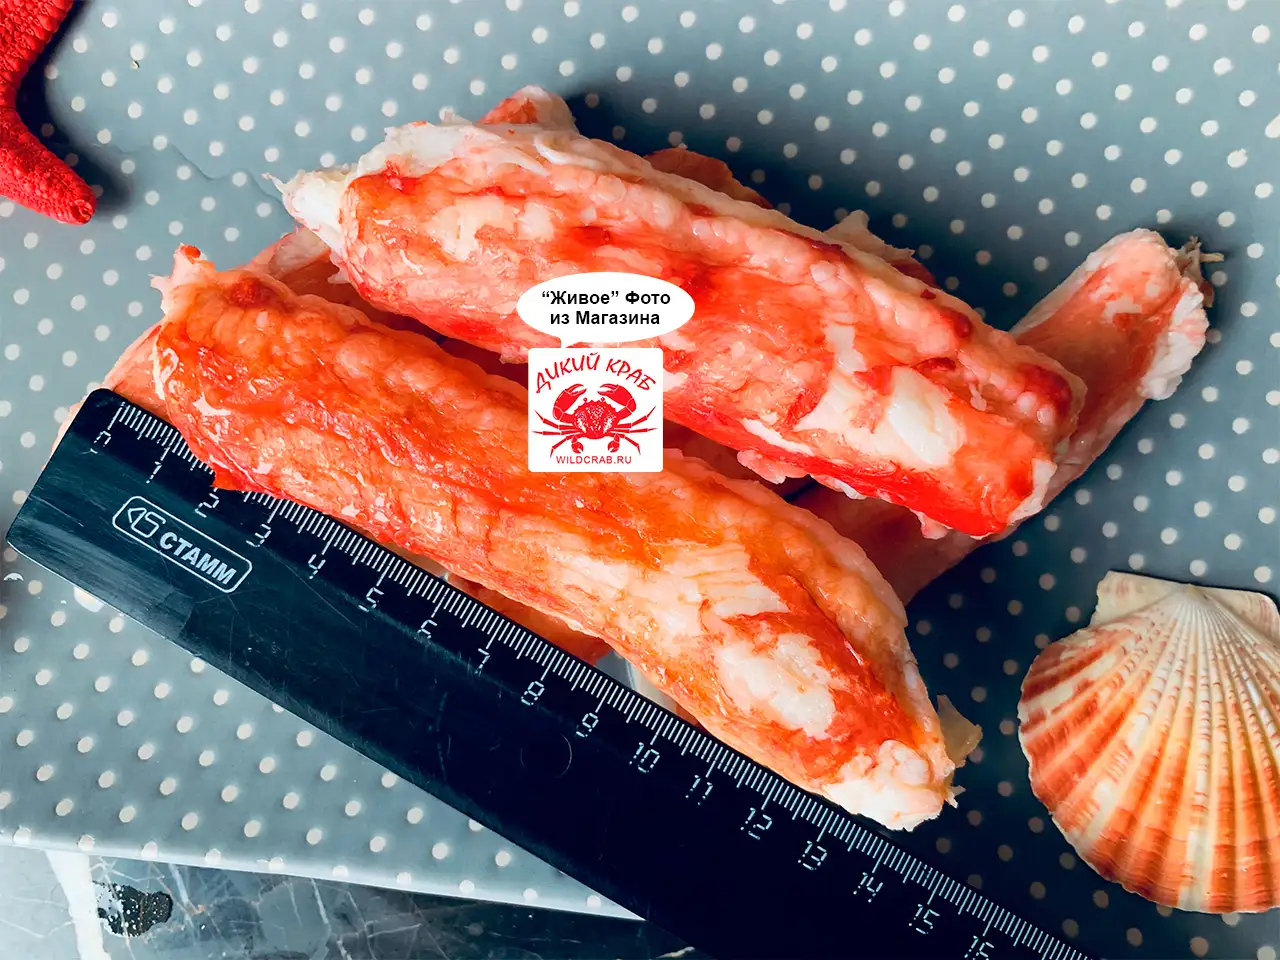 Первая фаланга Камчатского краба крупная 10-14 см / очищенная / мясо краба сухой заморозки 0,5 кг